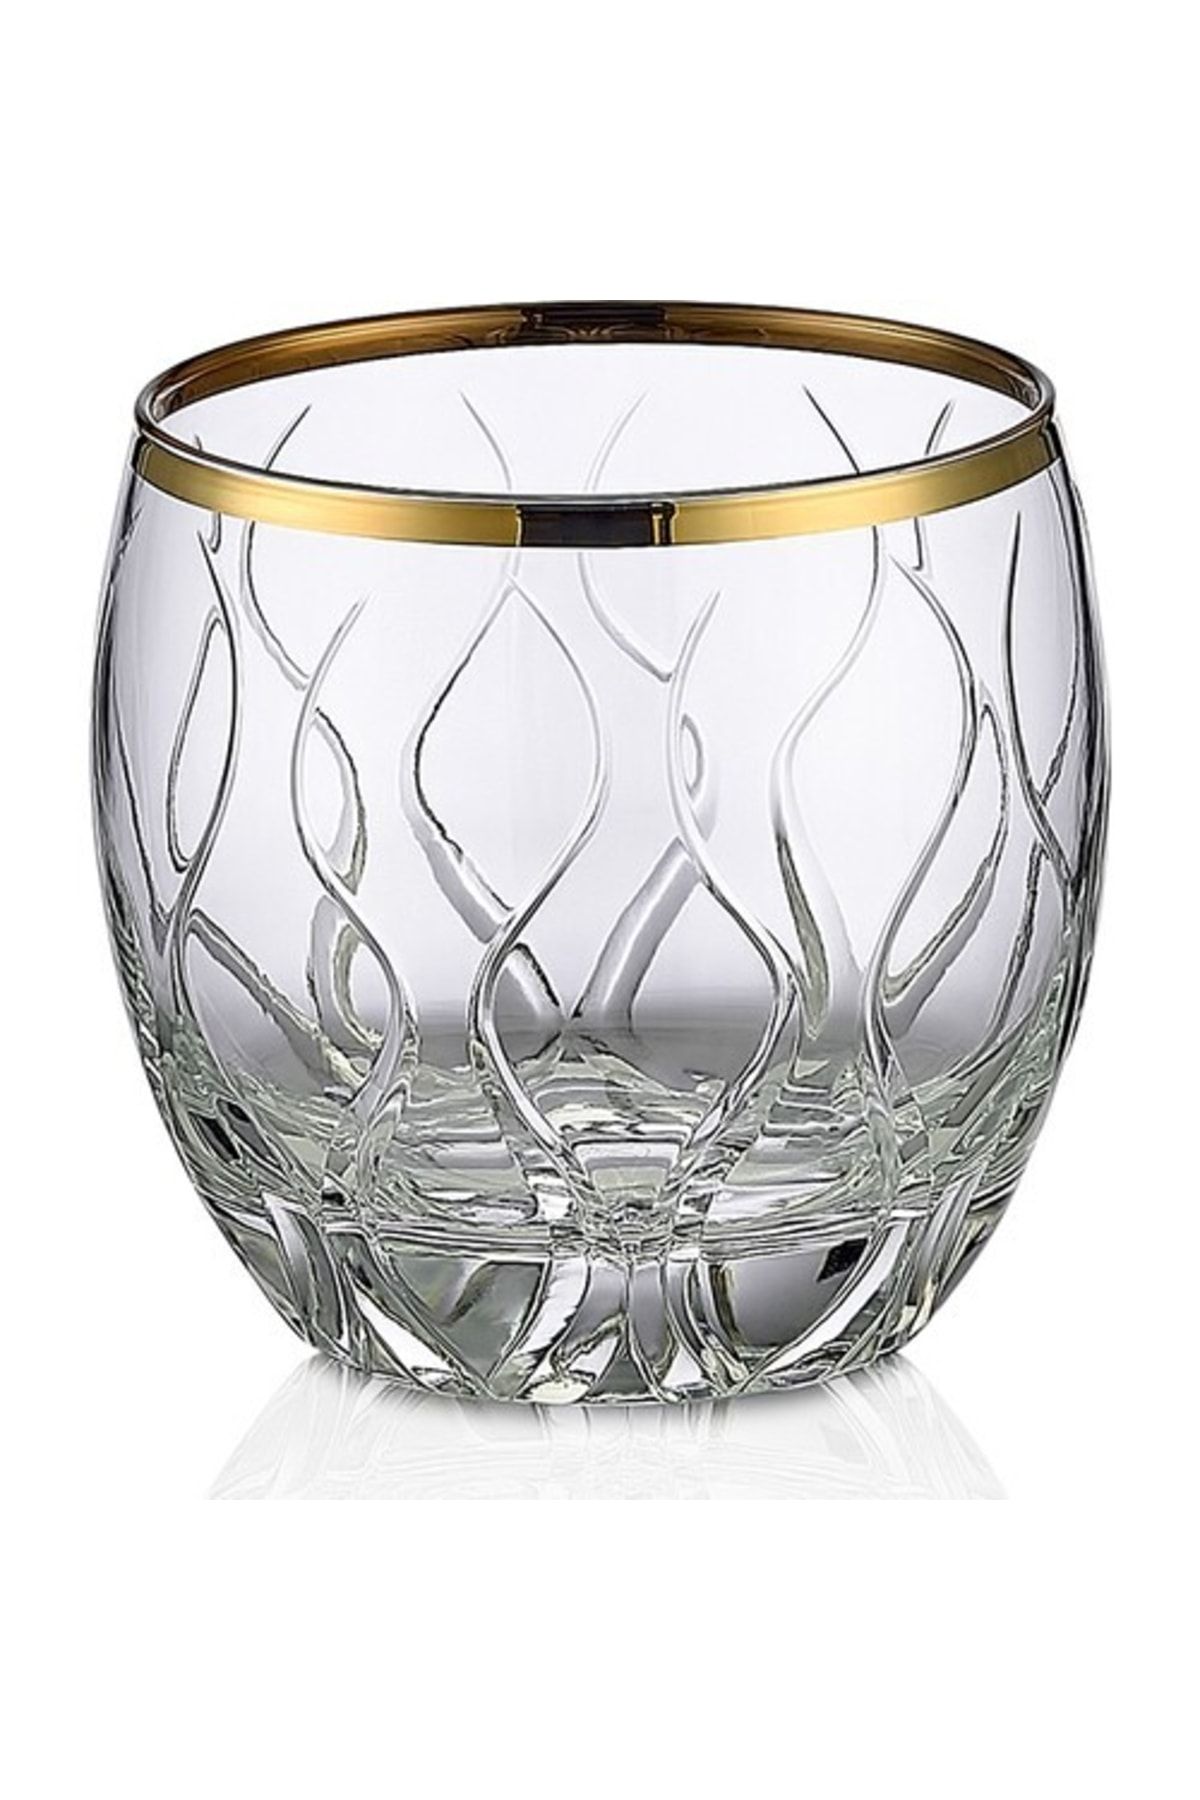 KCD Kilim Altın Kesme El Dekor Yaldızlı 6 Adet Desenli Su Bardağı Takımı